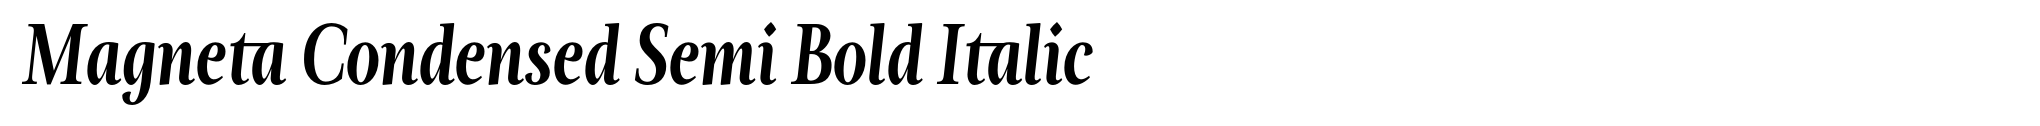 Magneta Condensed Semi Bold Italic image